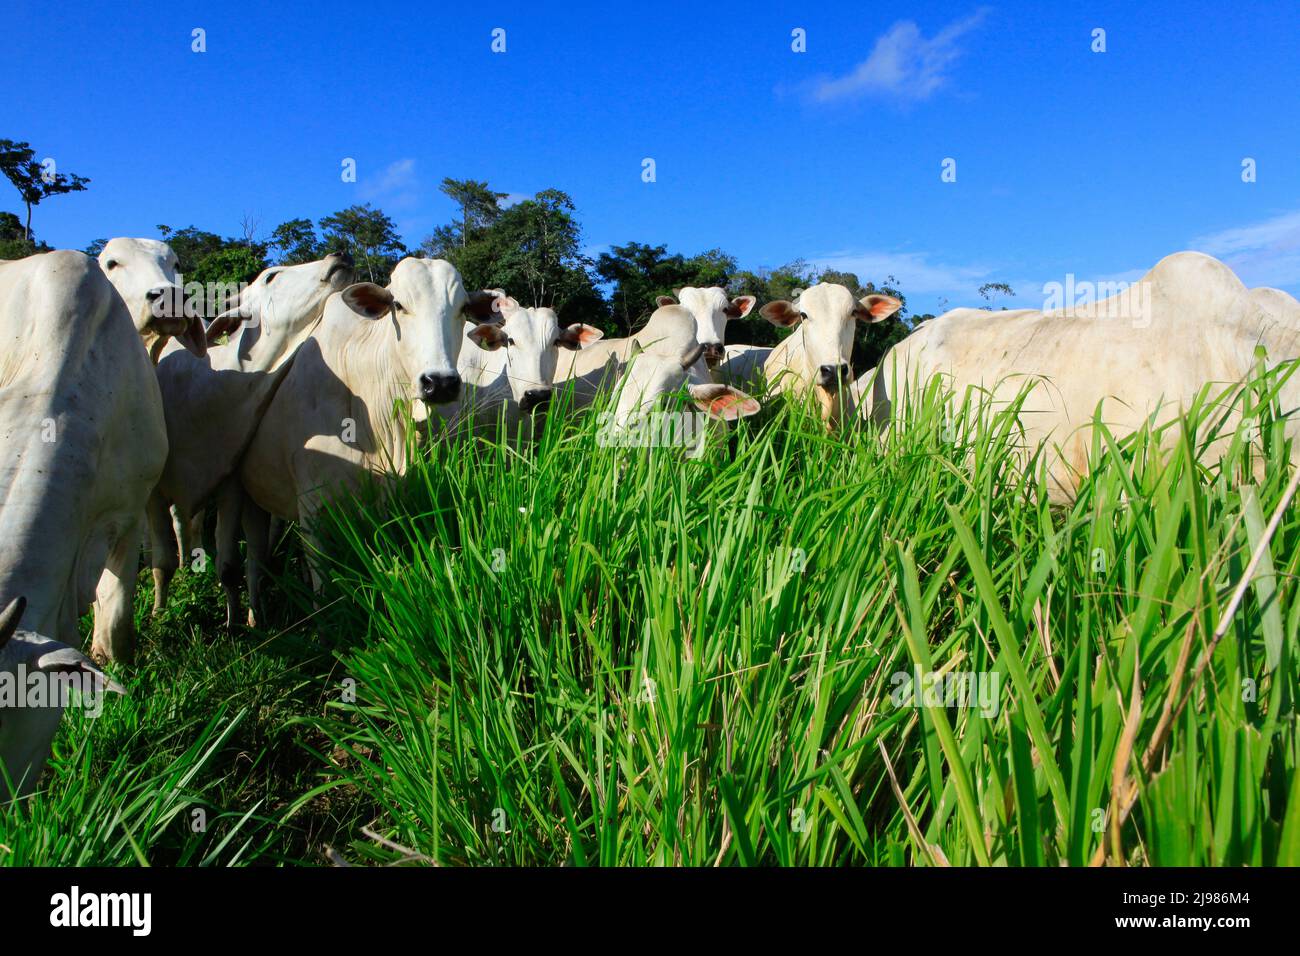 Rinderherde auf grüner Weide mit blauem Himmel im Hintergrund. Brasilien, Bundesstaat Pará, Amazonas. Stockfoto